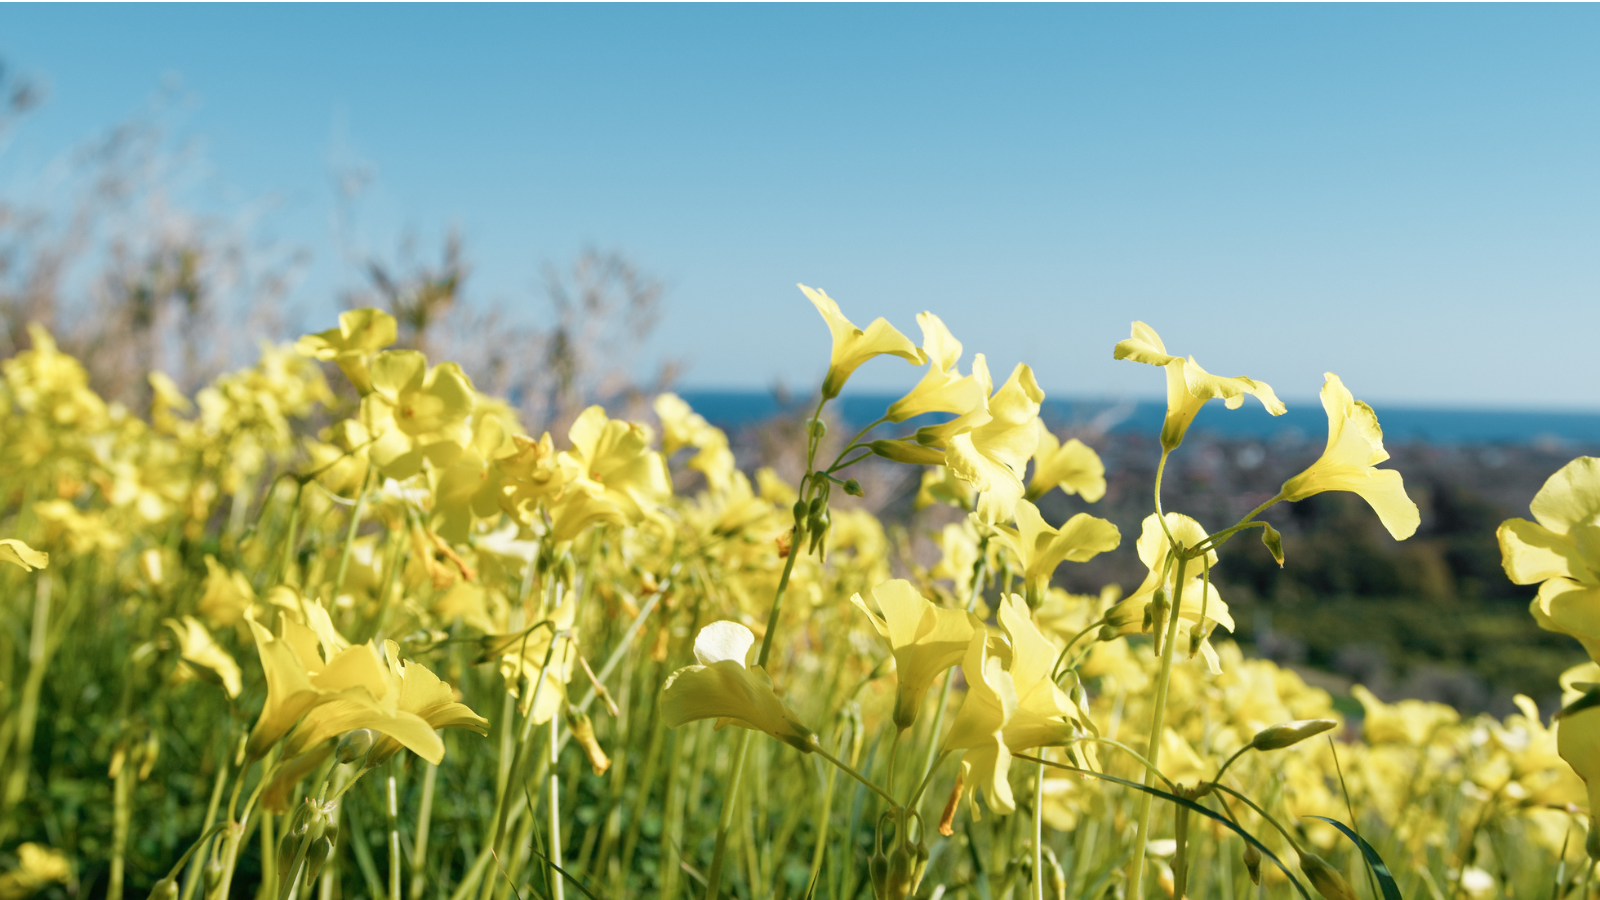 Field of yellow sorrel flowers